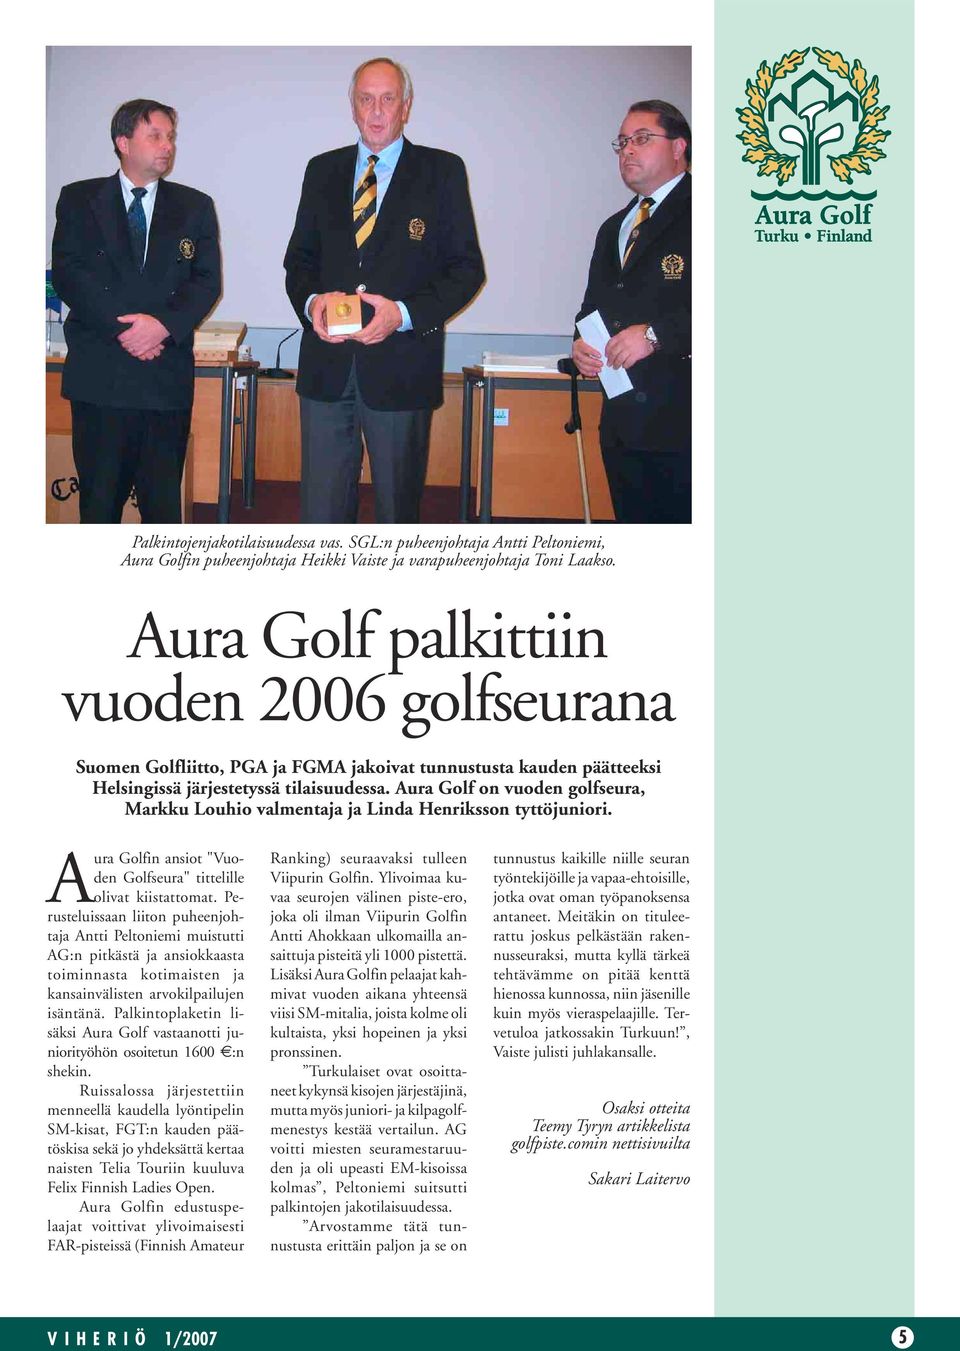 Aura Golf on vuoden golfseura, Markku Louhio valmentaja ja Linda Henriksson tyttöjuniori. Aura Golfin ansiot "Vuoden Golfseura" tittelille olivat kiistattomat.